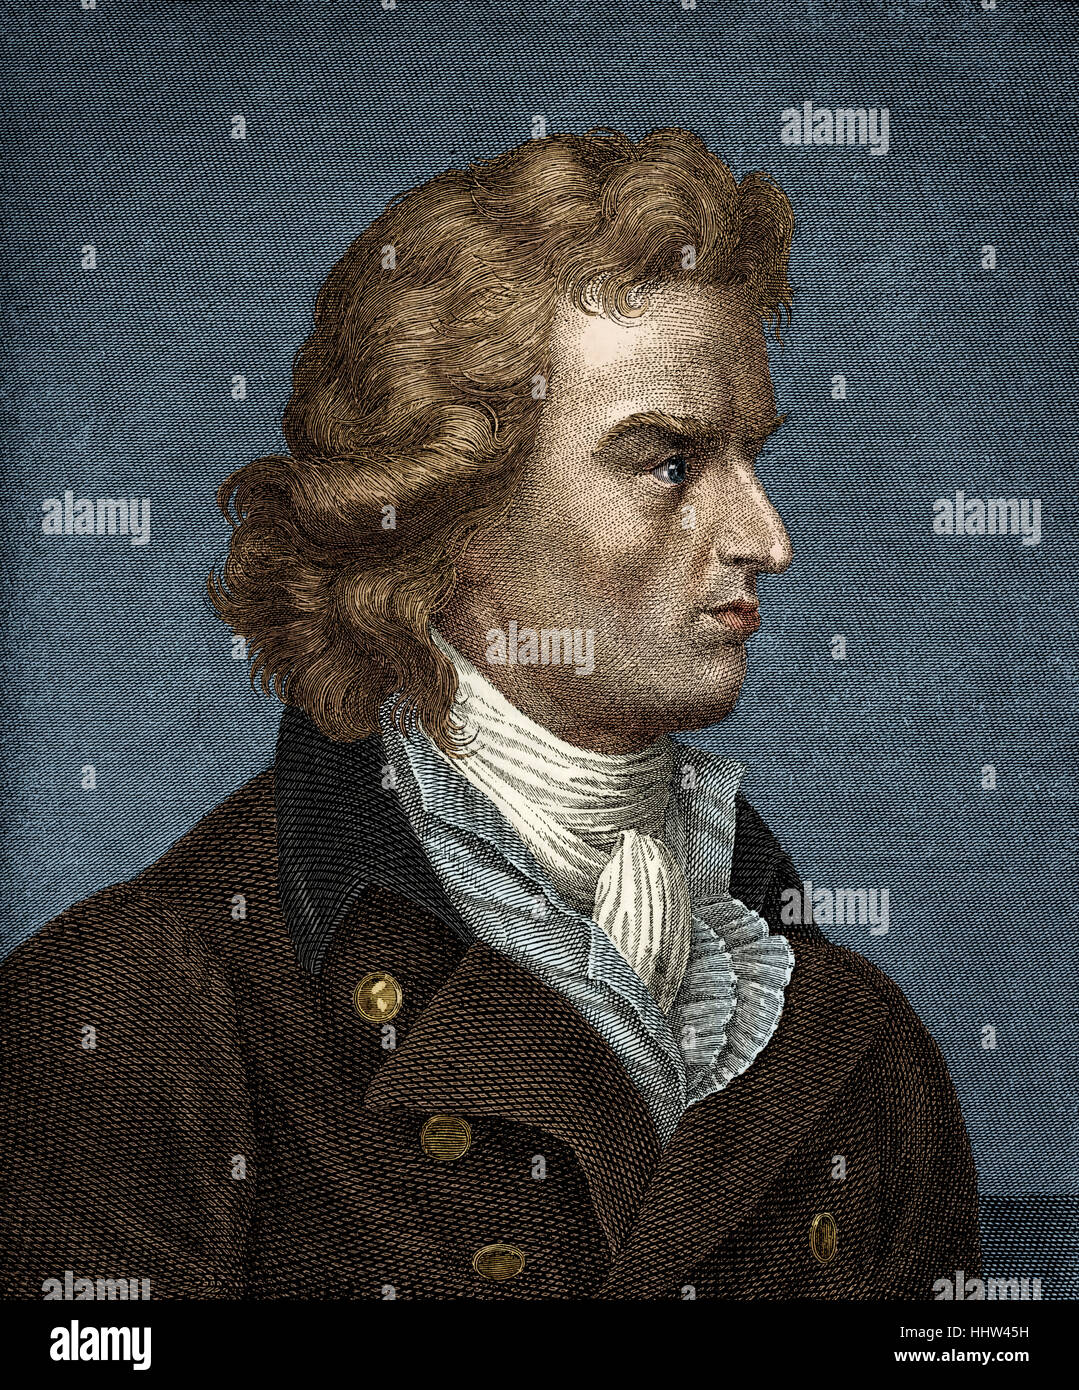 Friedrich von Schiller - retrato. Poeta y dramaturgo alemán el 10 de noviembre de 1759 - 9 de mayo de 1805. Escribió "Oda a la alegría" (Beethoven 's Foto de stock